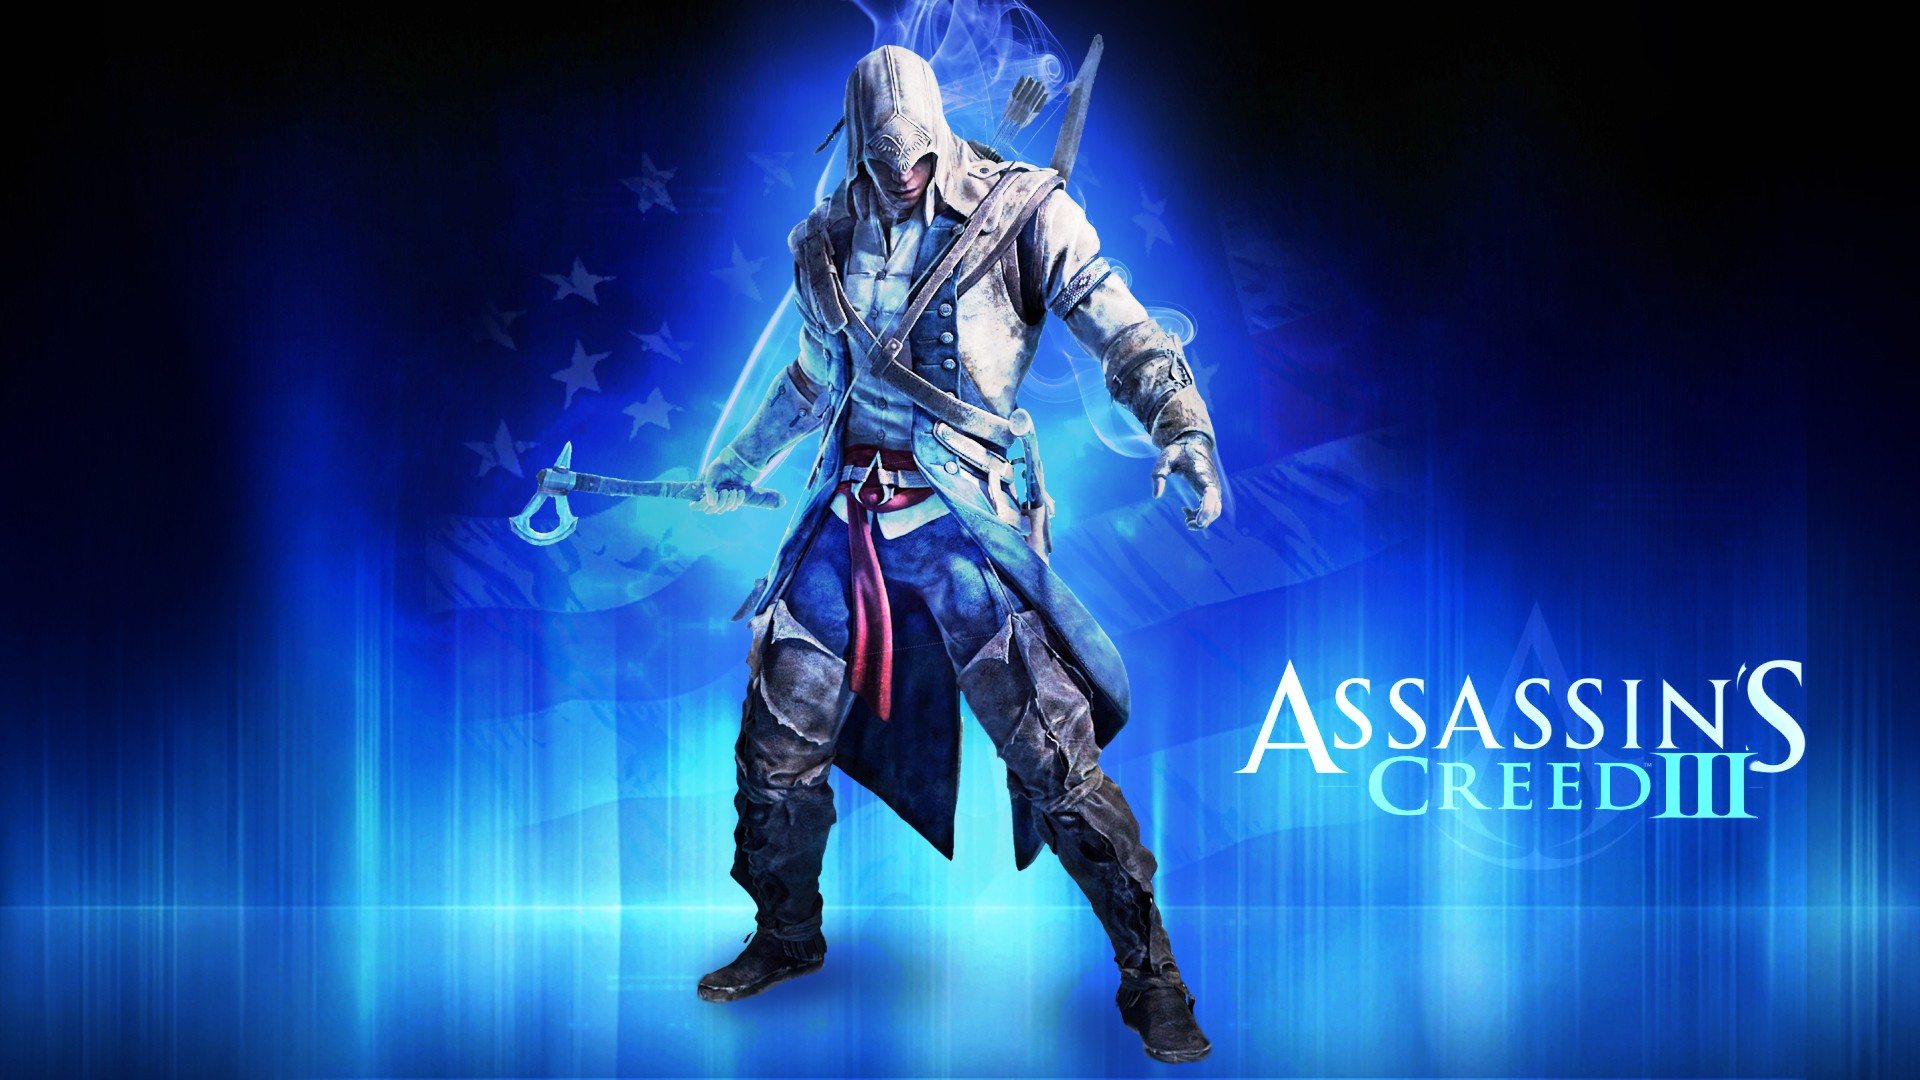 video, Games, Blue, Assassin, Assassins, Creed, Assassins, Creed, 3, Fan, Art Wallpaper